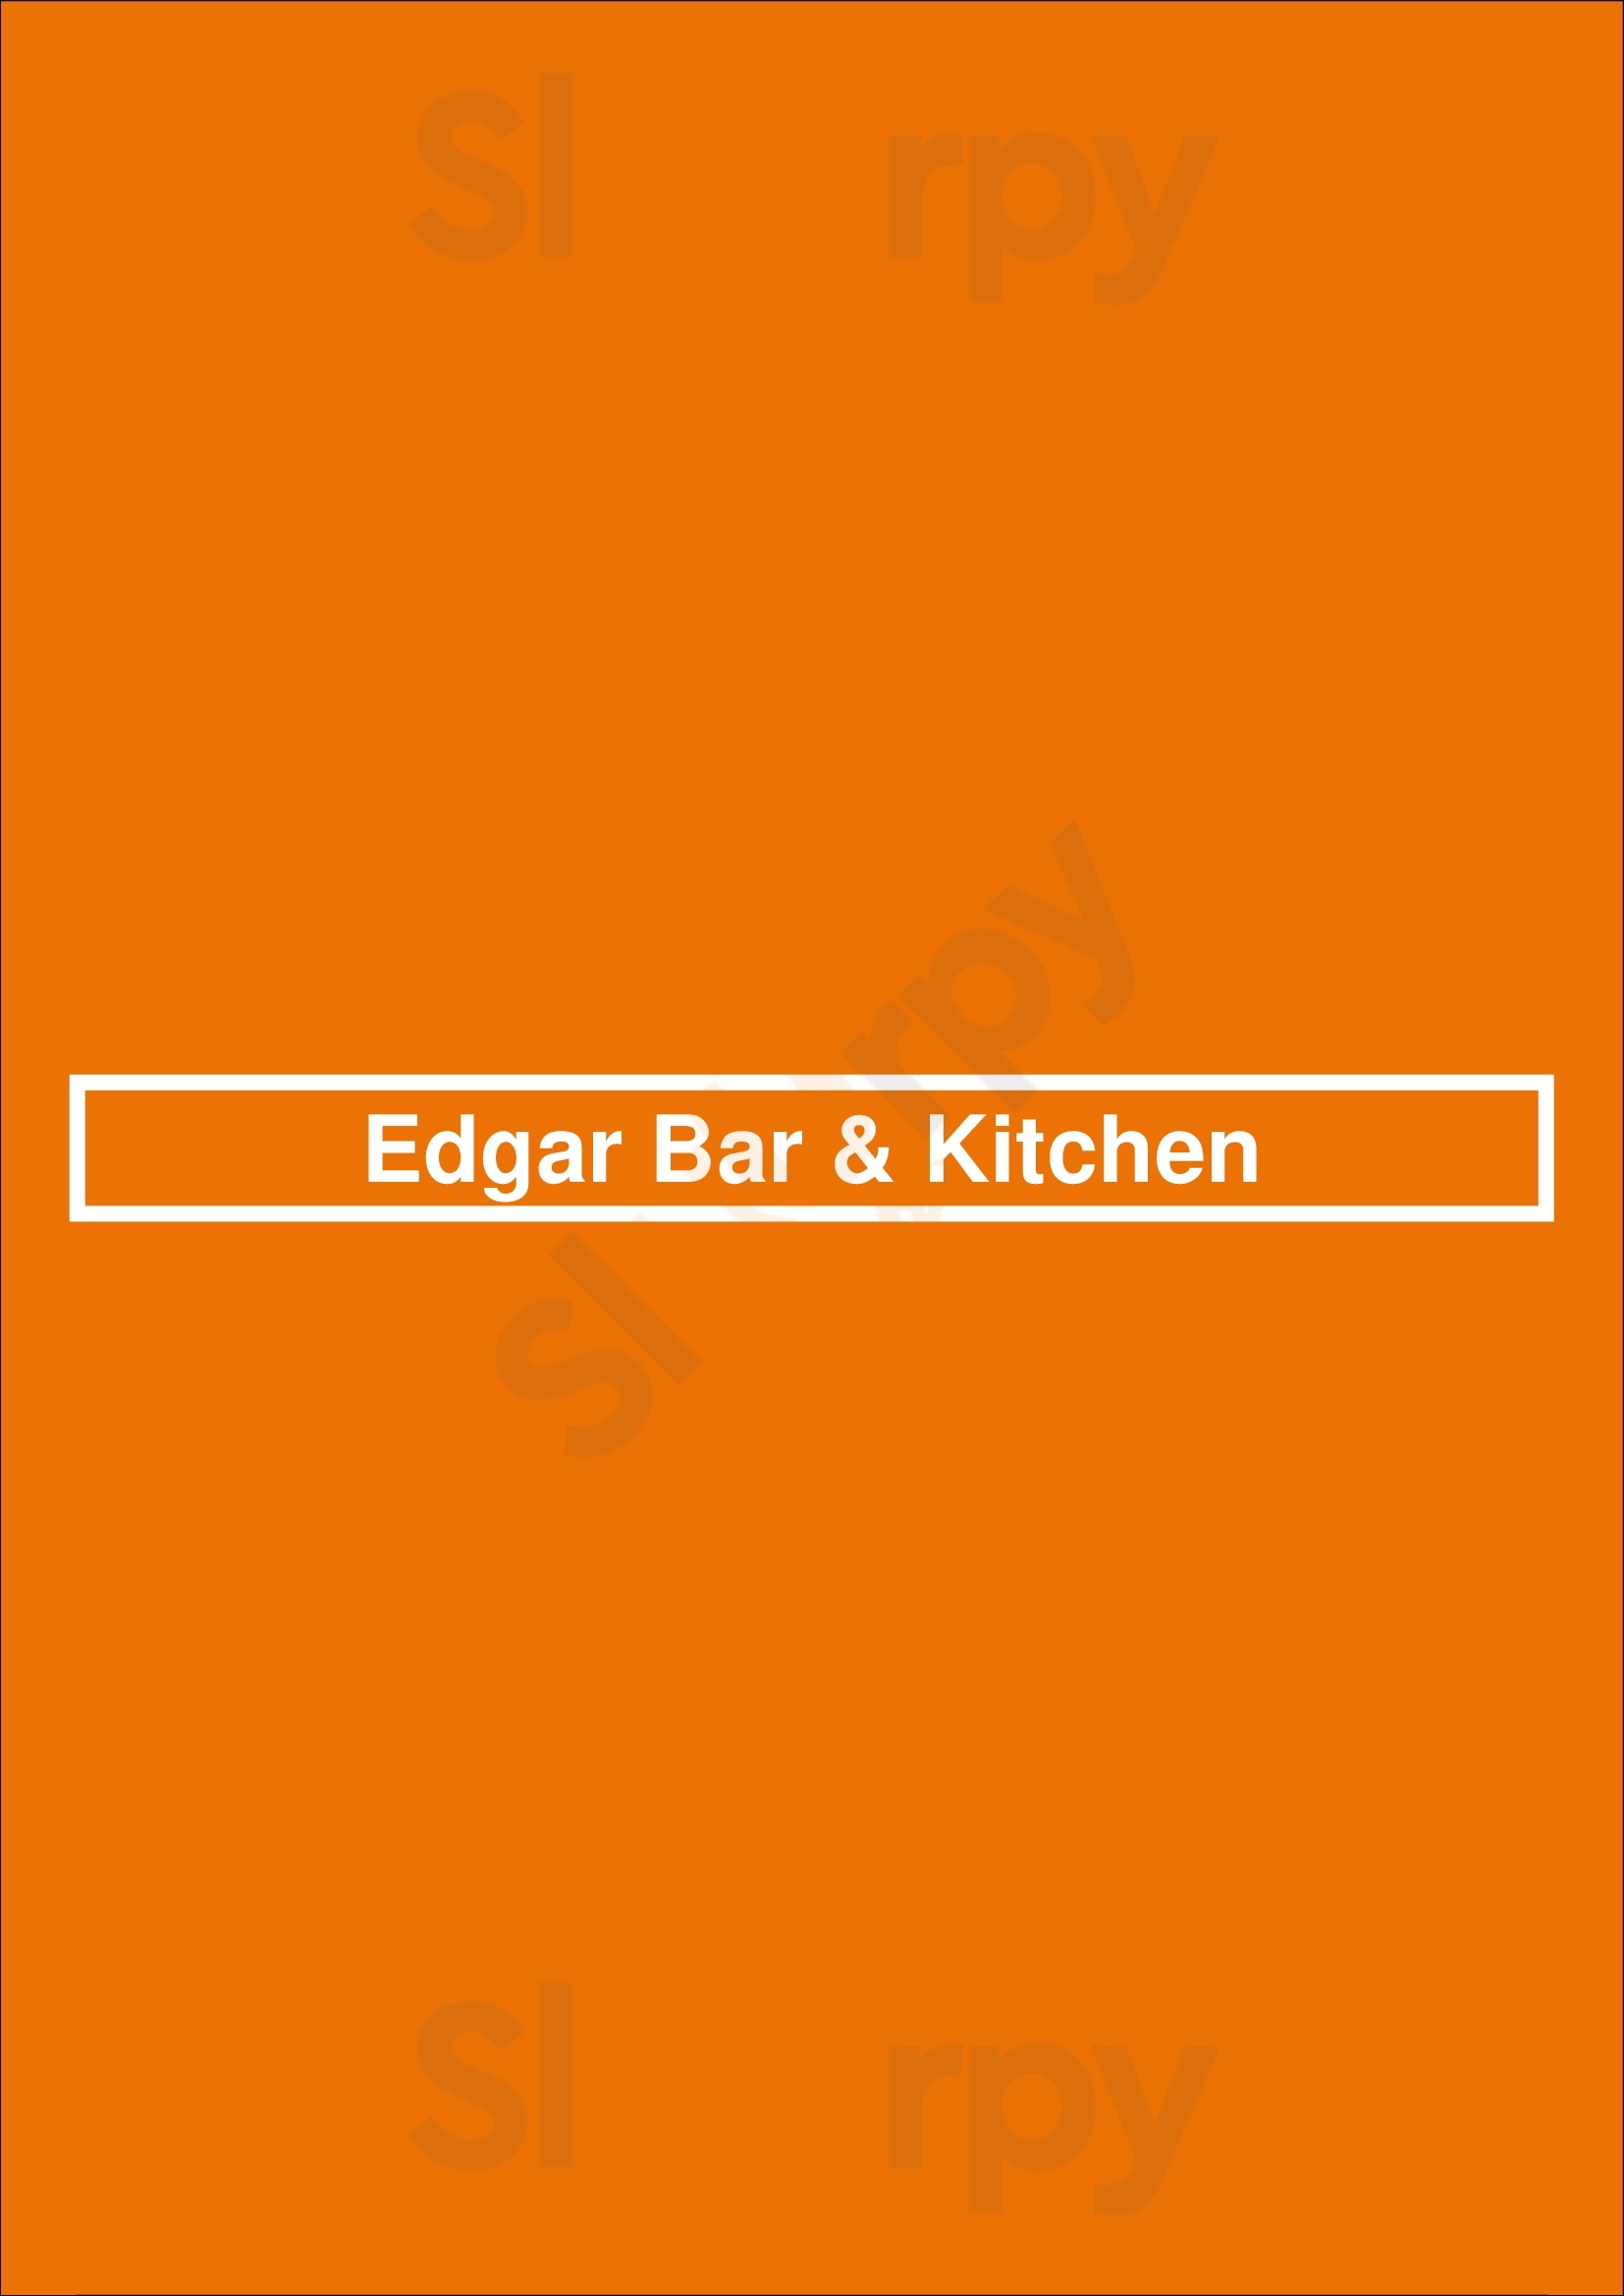 Edgar Bar & Kitchen Washington DC Menu - 1